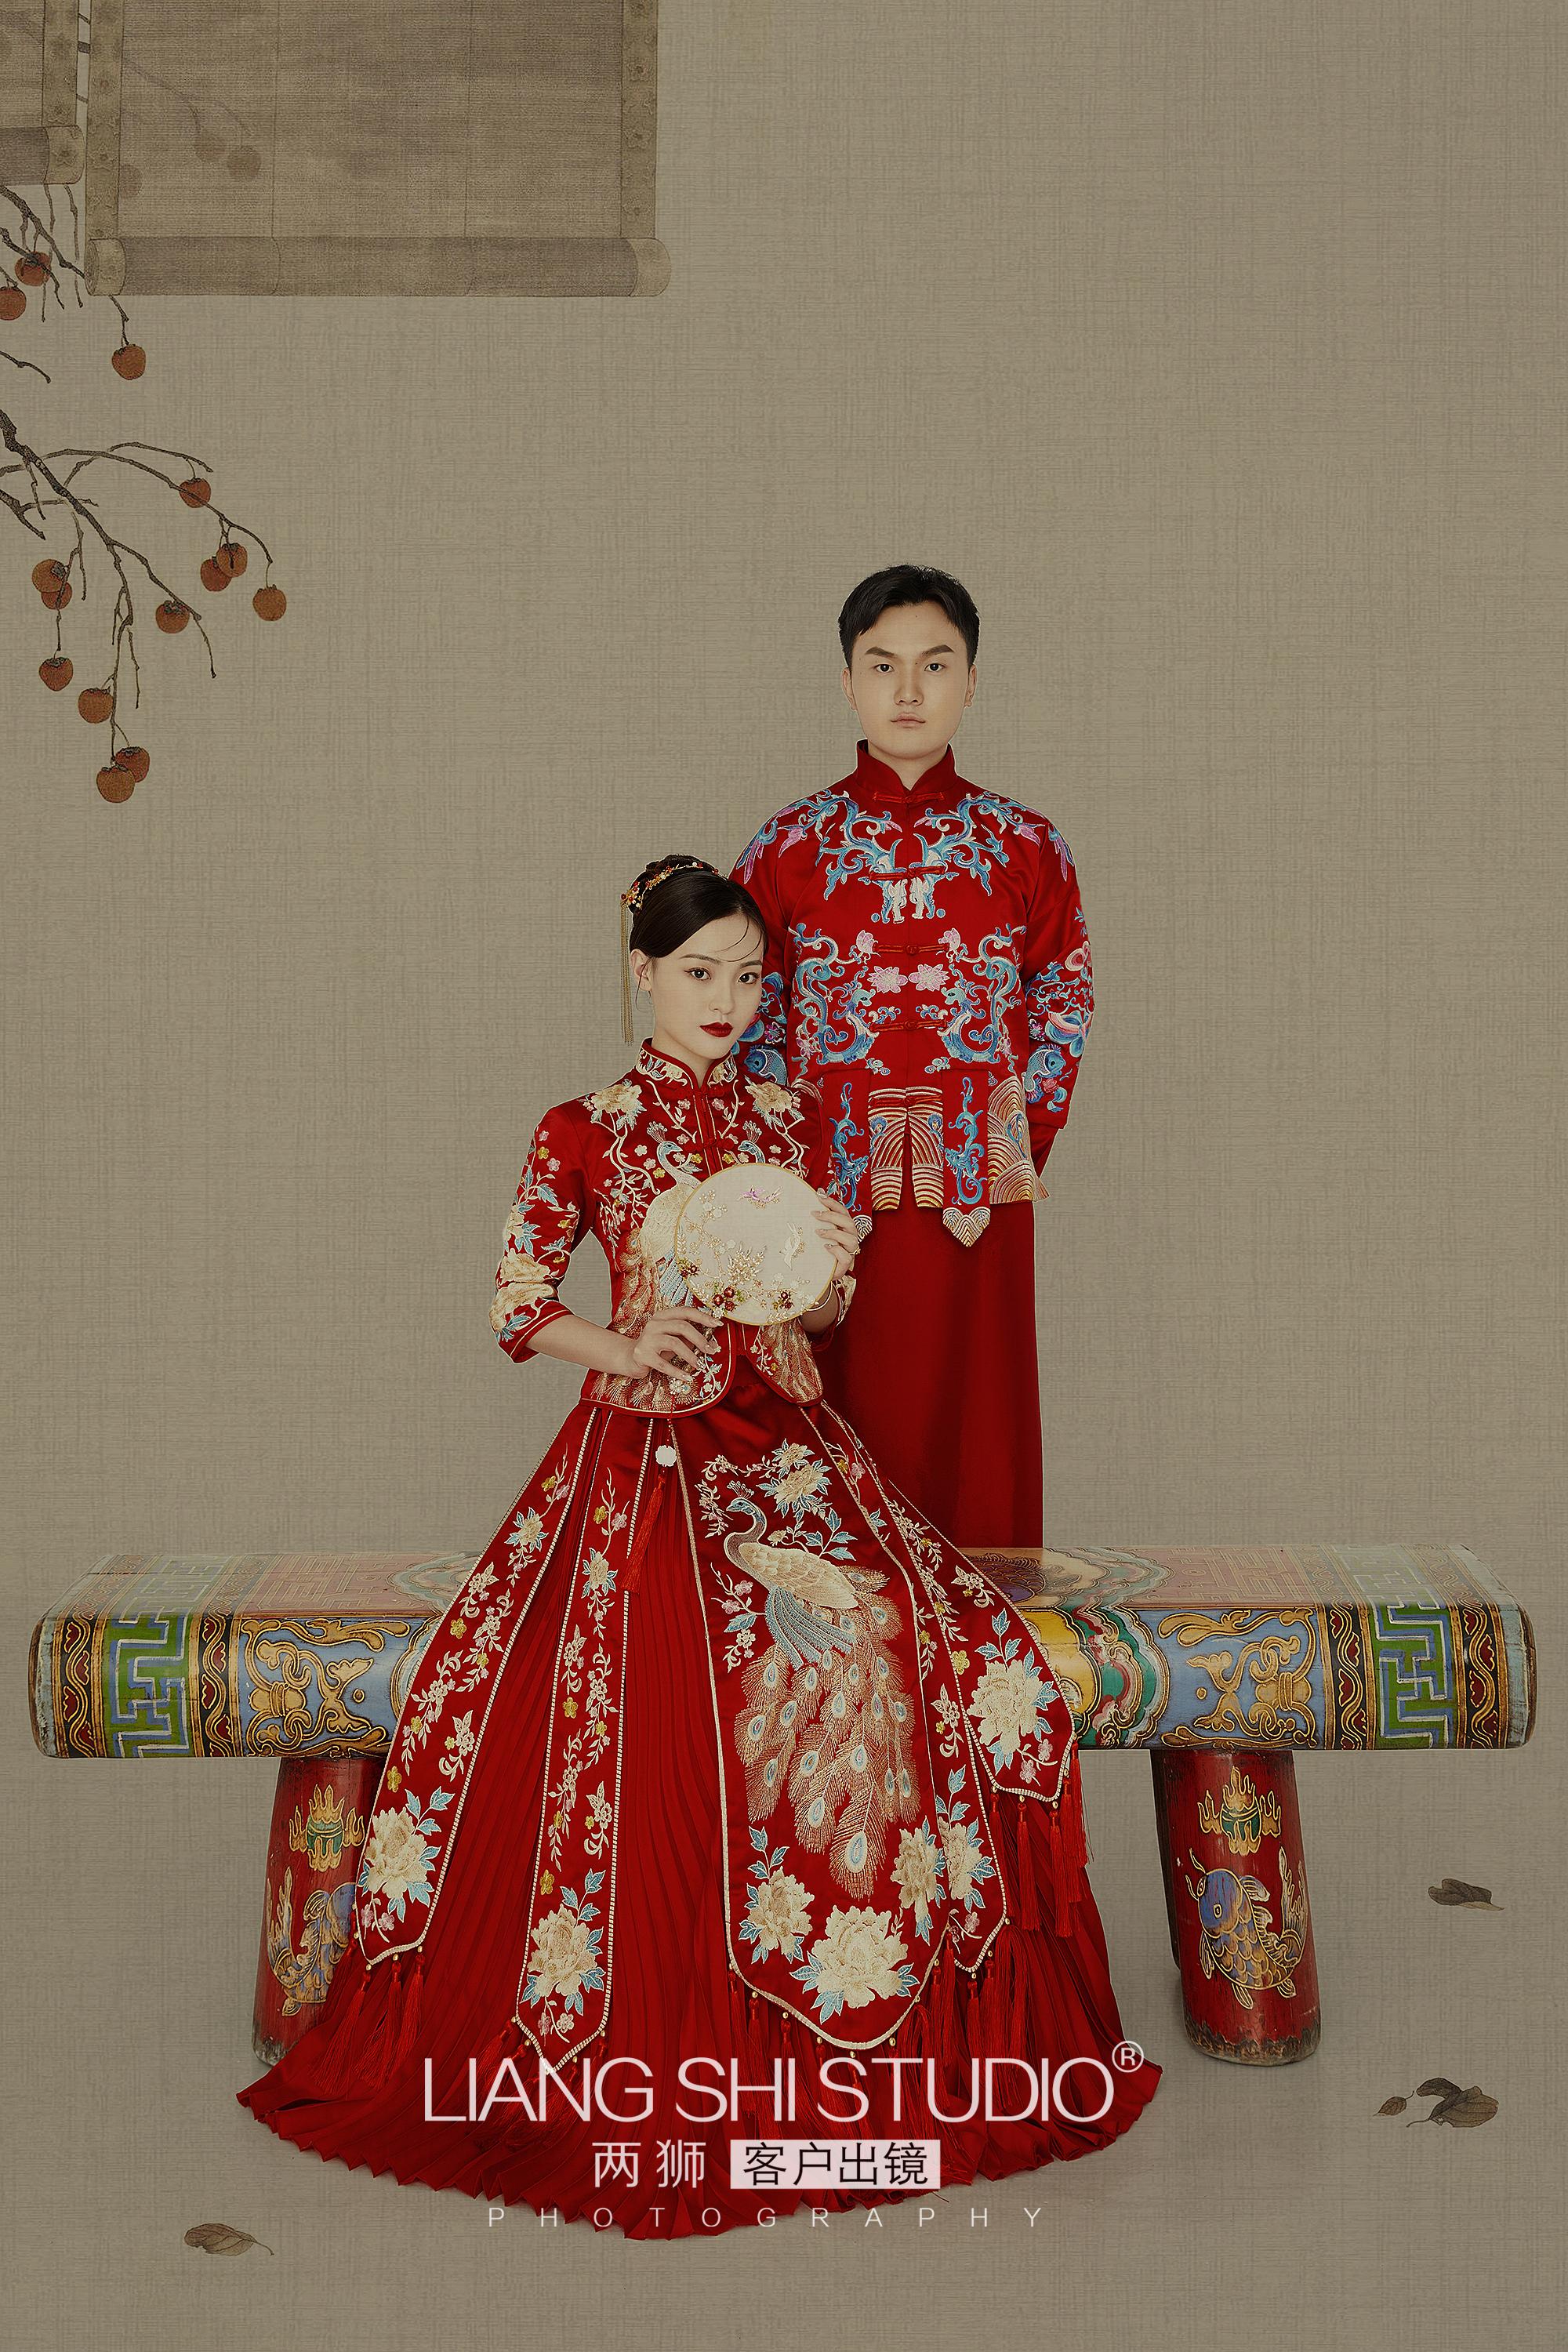 我拍了一组被全家人称赞的婚纱照,中式复古